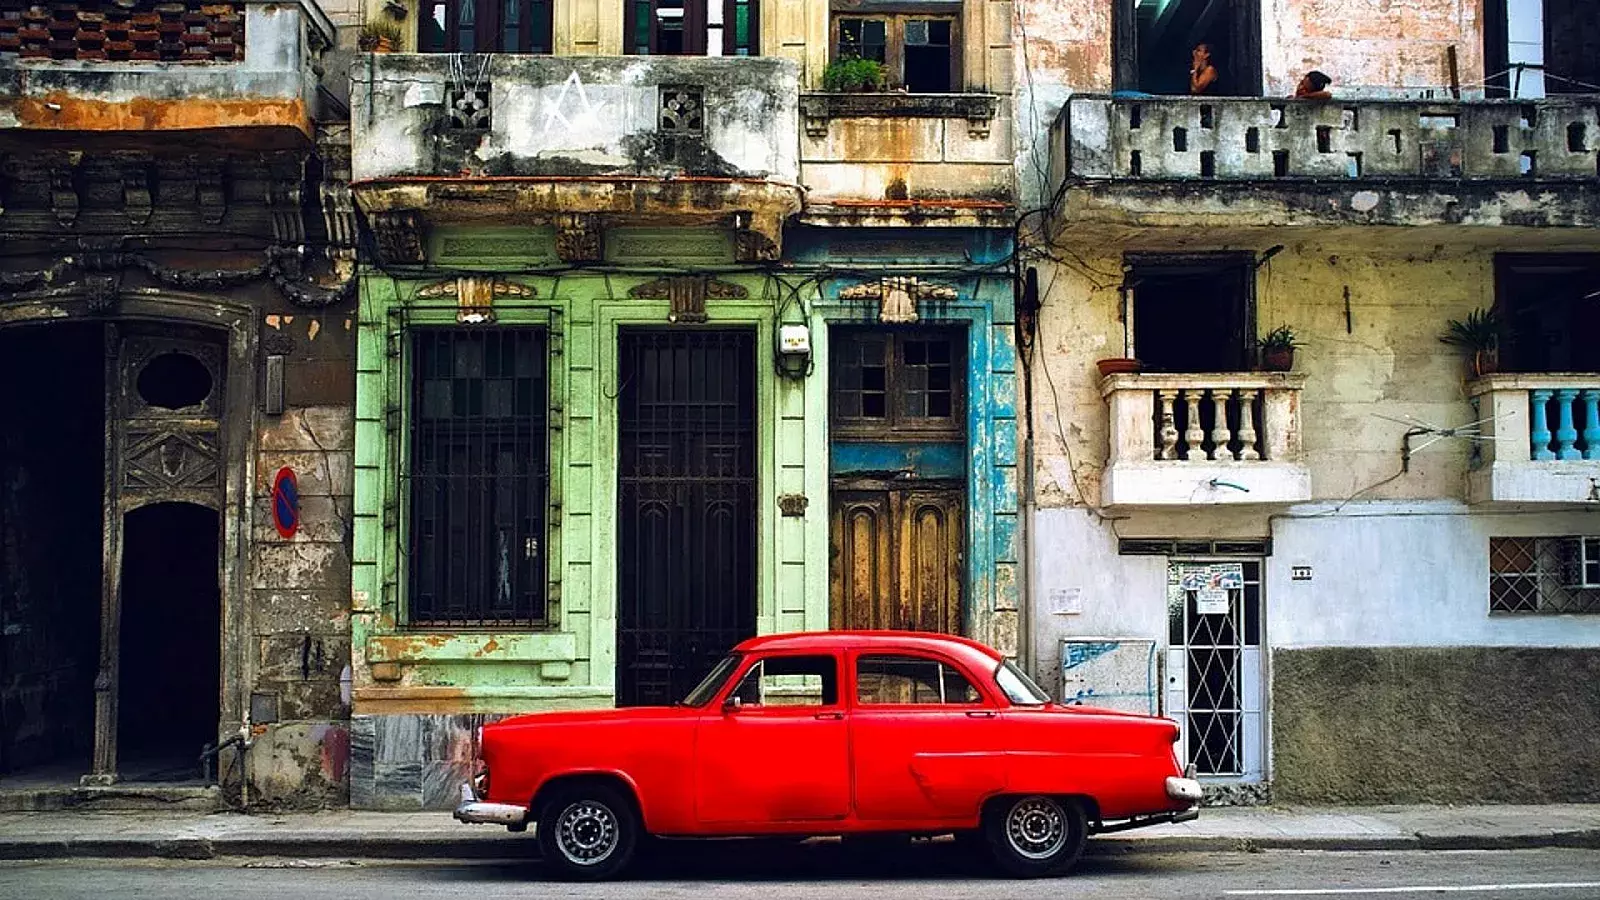 Calle de La Habana, Cuba